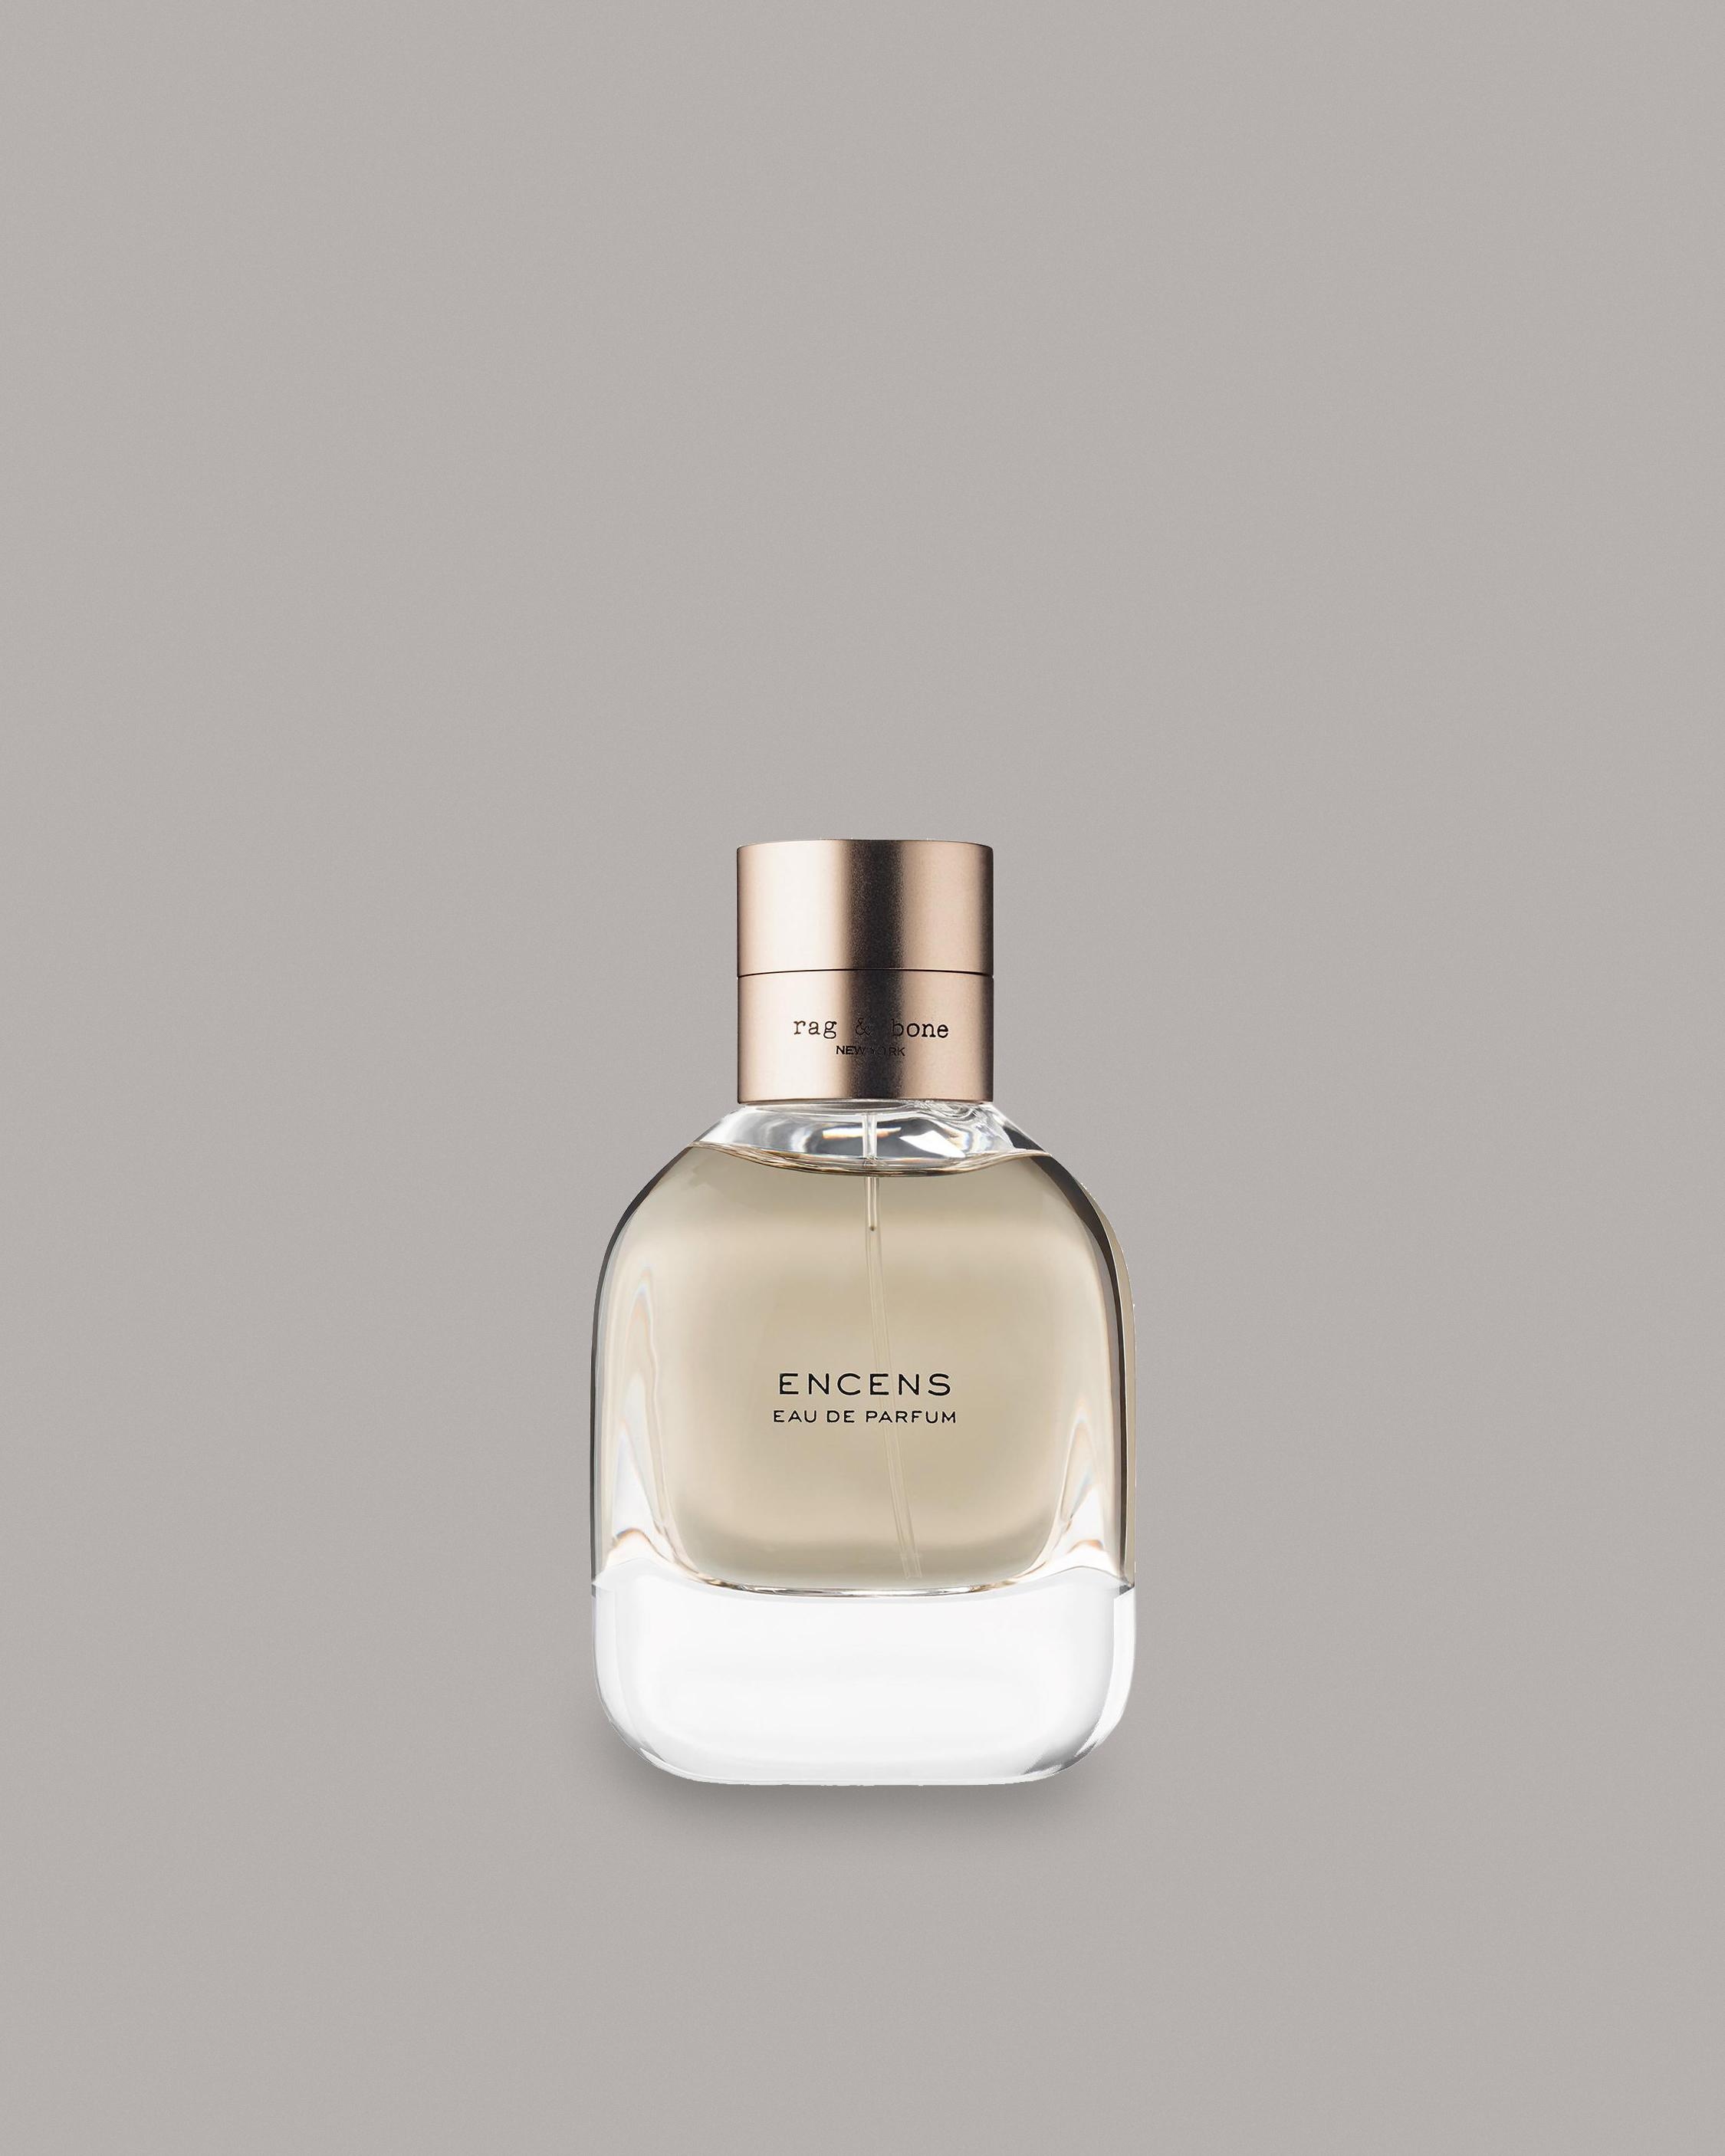 ENCENS 50ML
Fragrance - 1